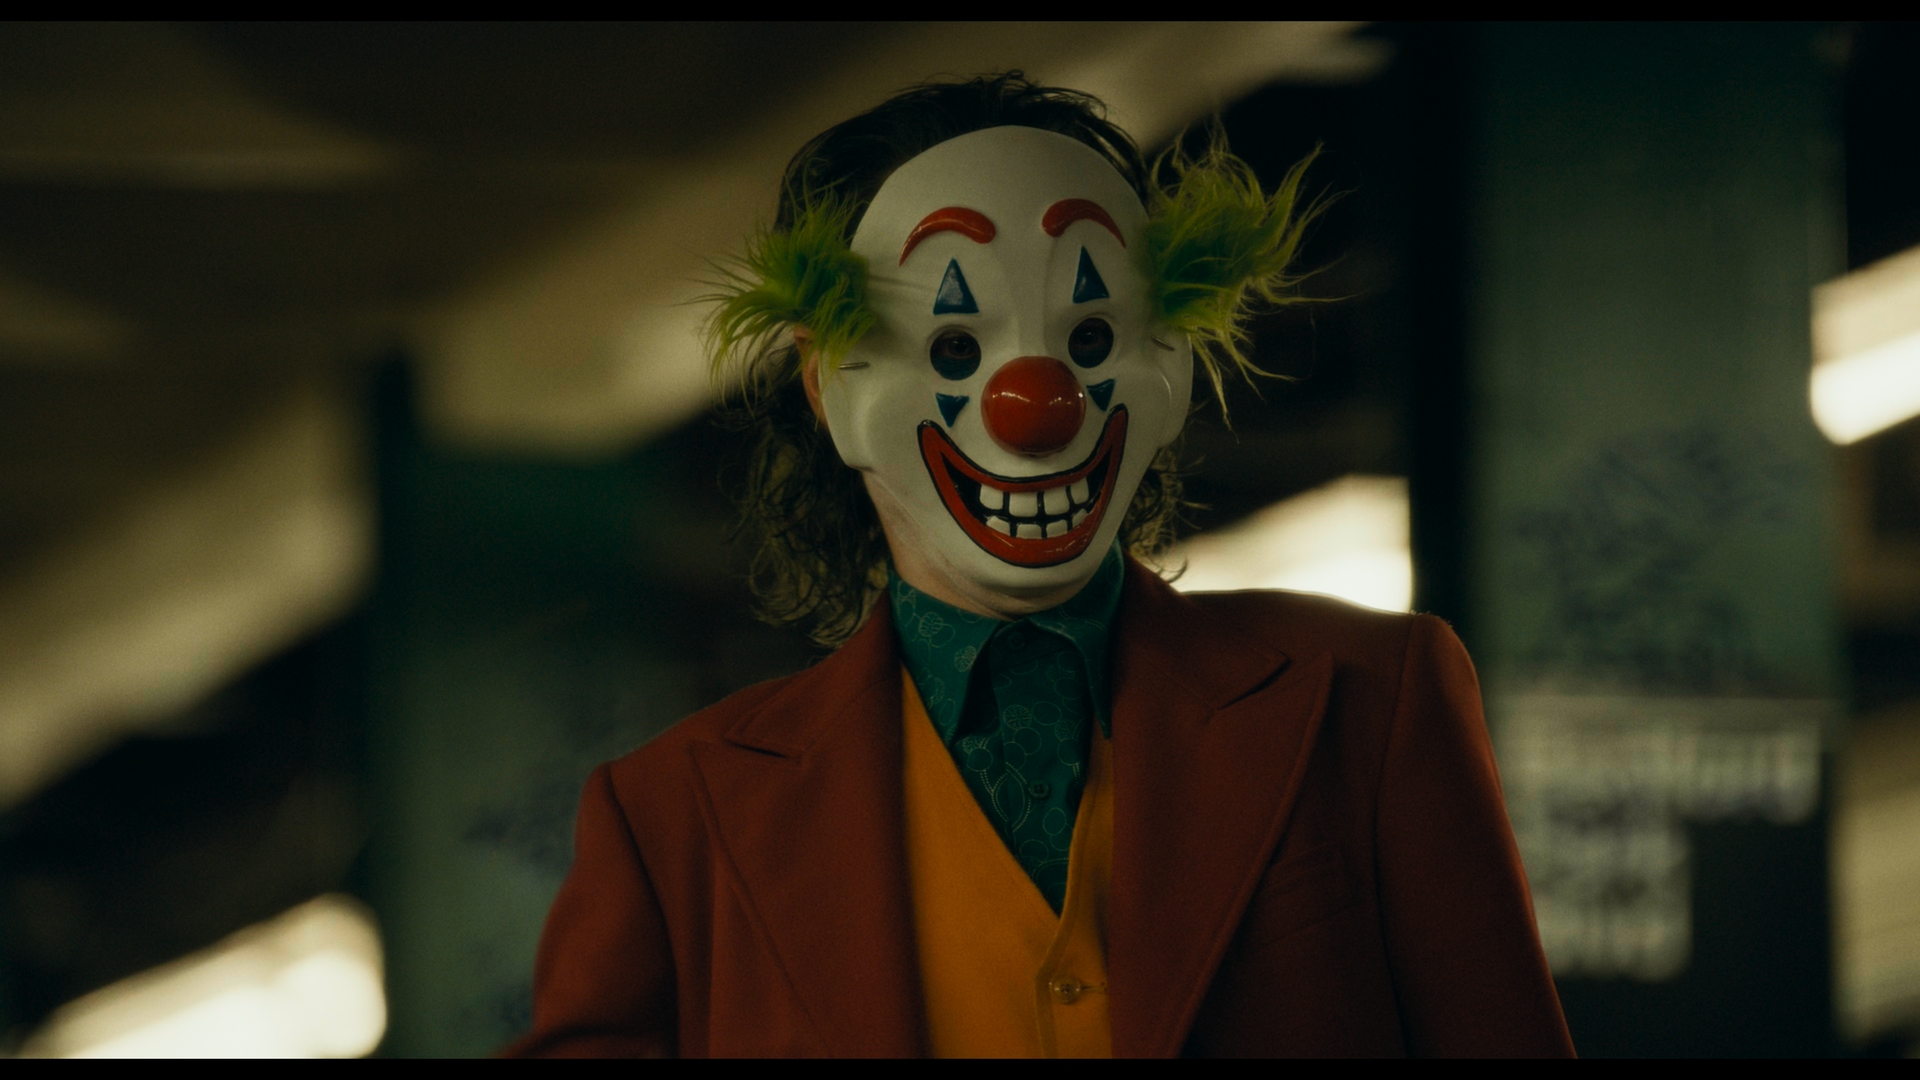 Joker Joaquin Phoenix Joker 2019 Movie DC Comics Clown Mask Movies Film Stills 1920x1080